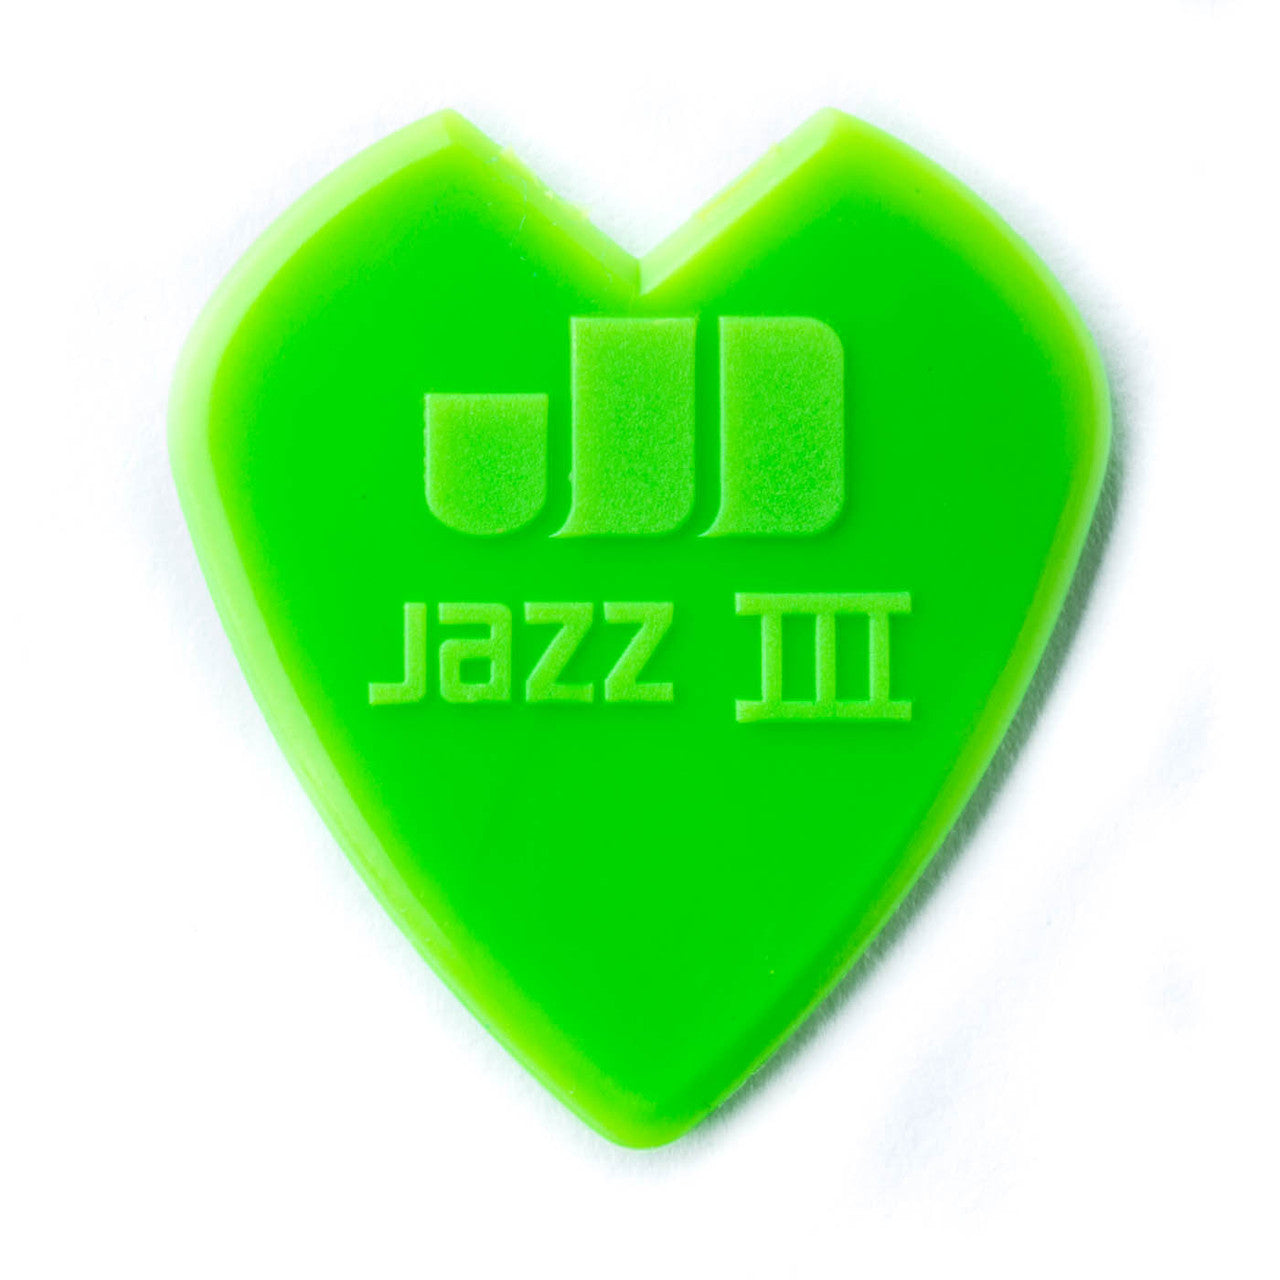 Kirk Hammett Jazz III Pick Green